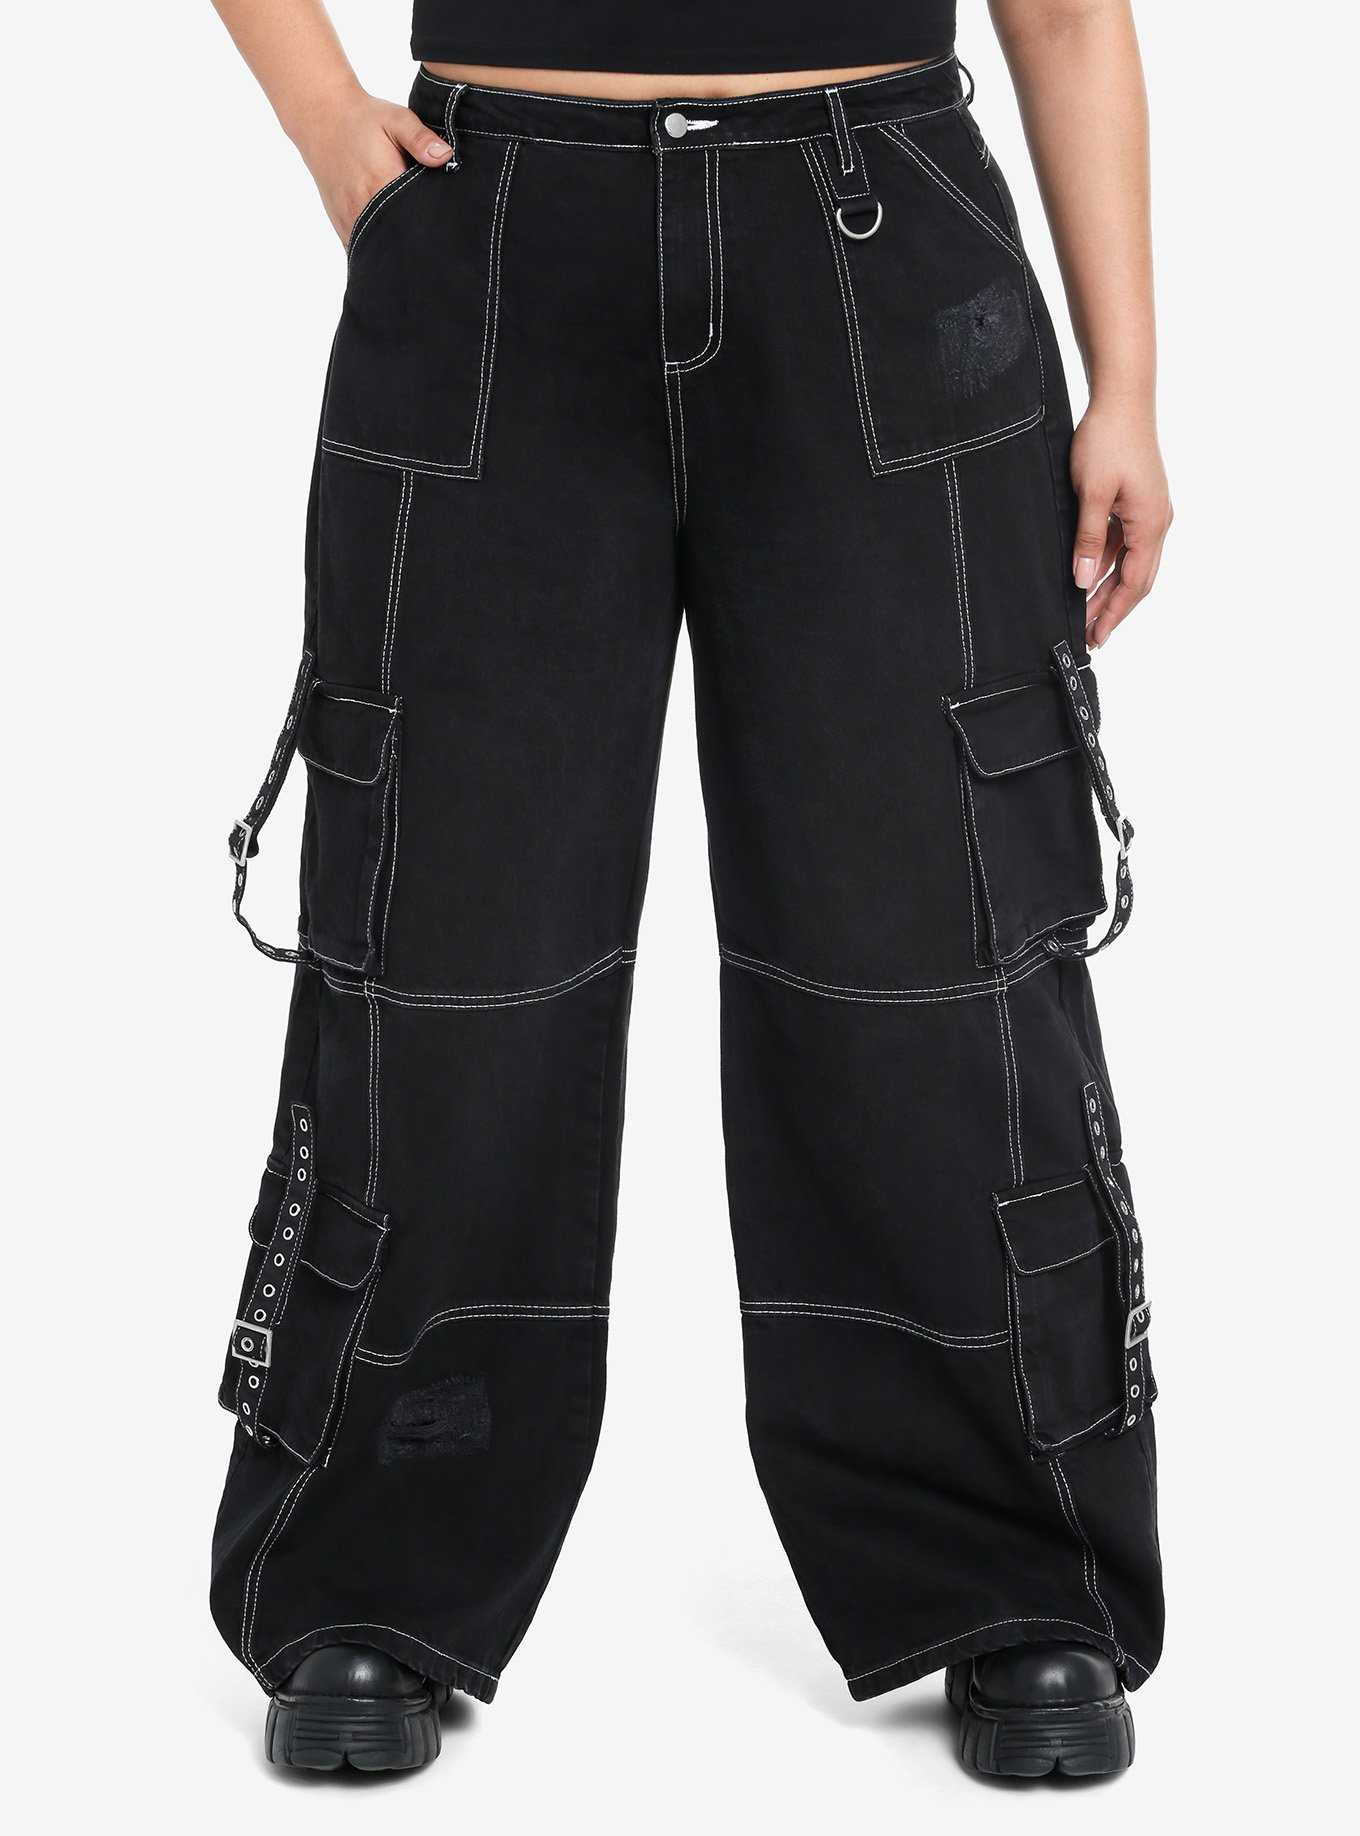 Black Low Rise Flare Denim Pants Plus Size